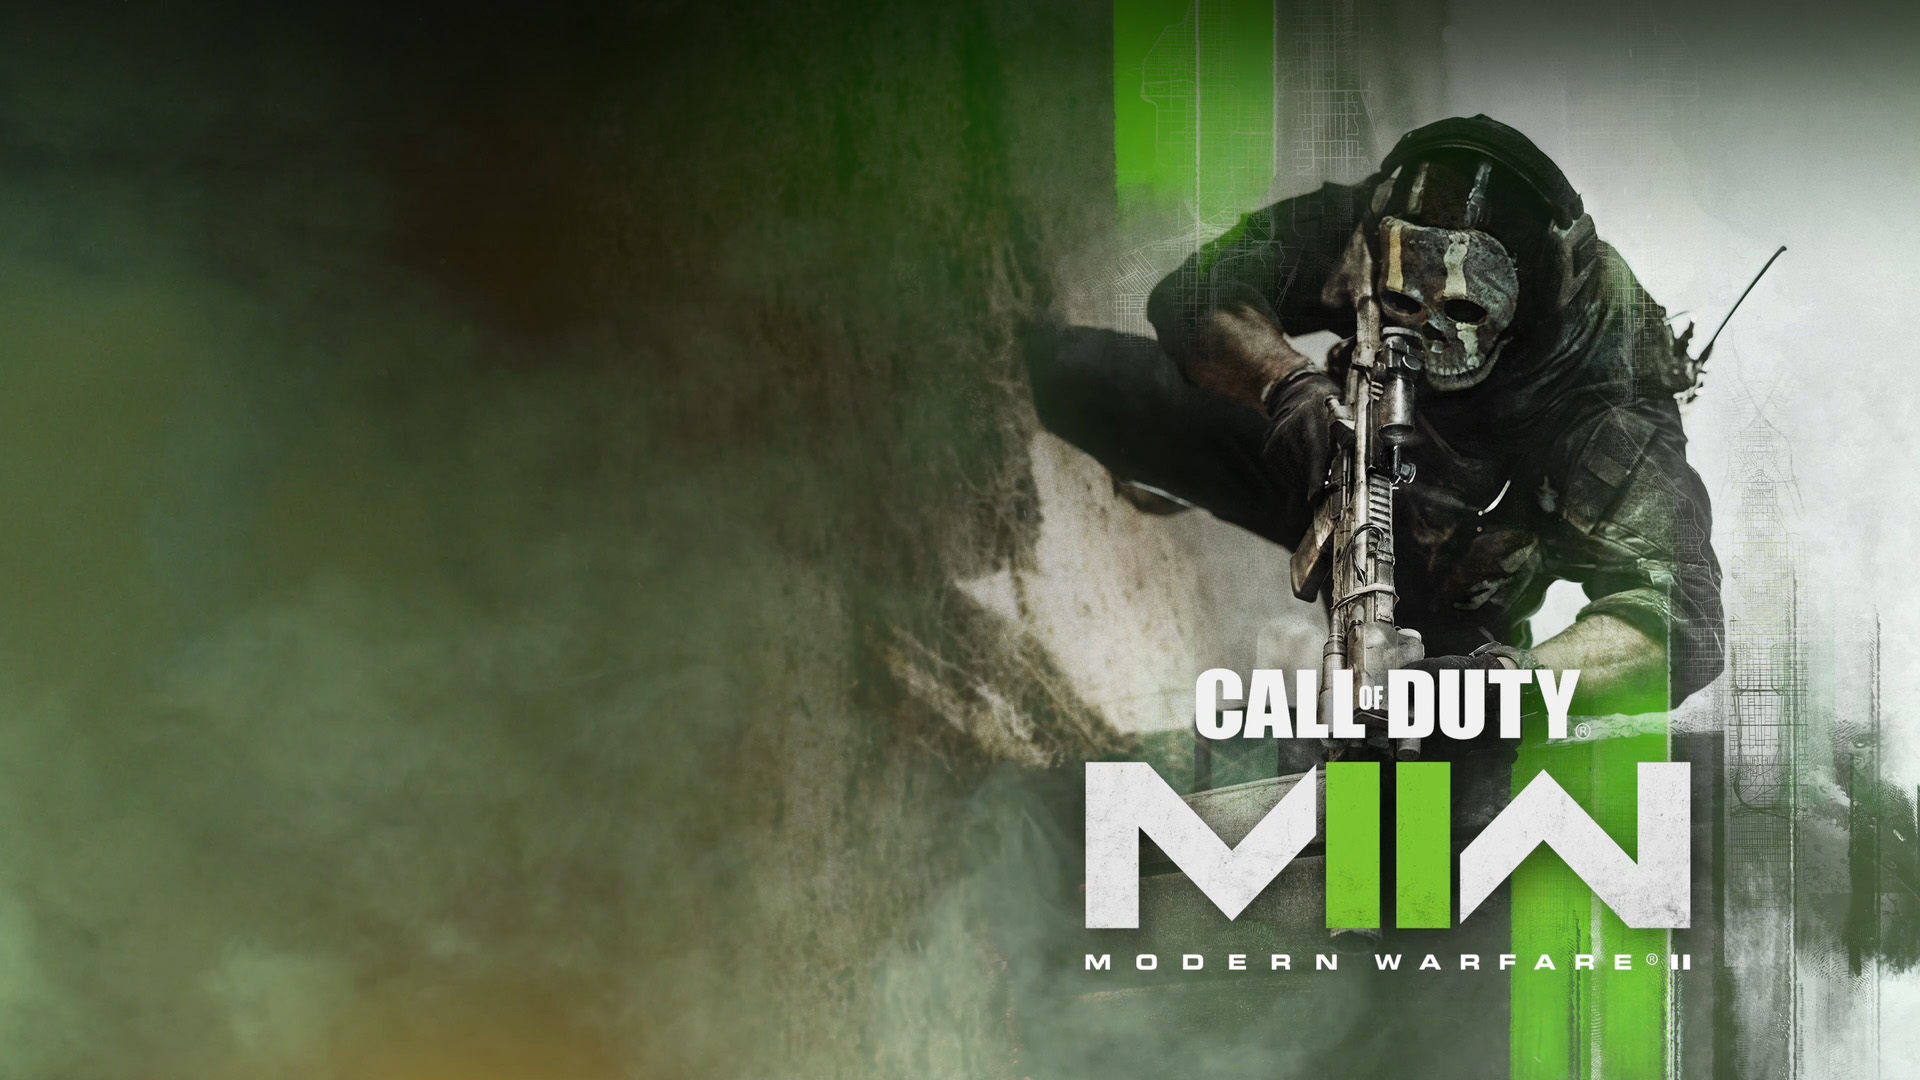 Call of Duty: Modern Warfare II, un opérateur est accroupi prêt pour l’action.